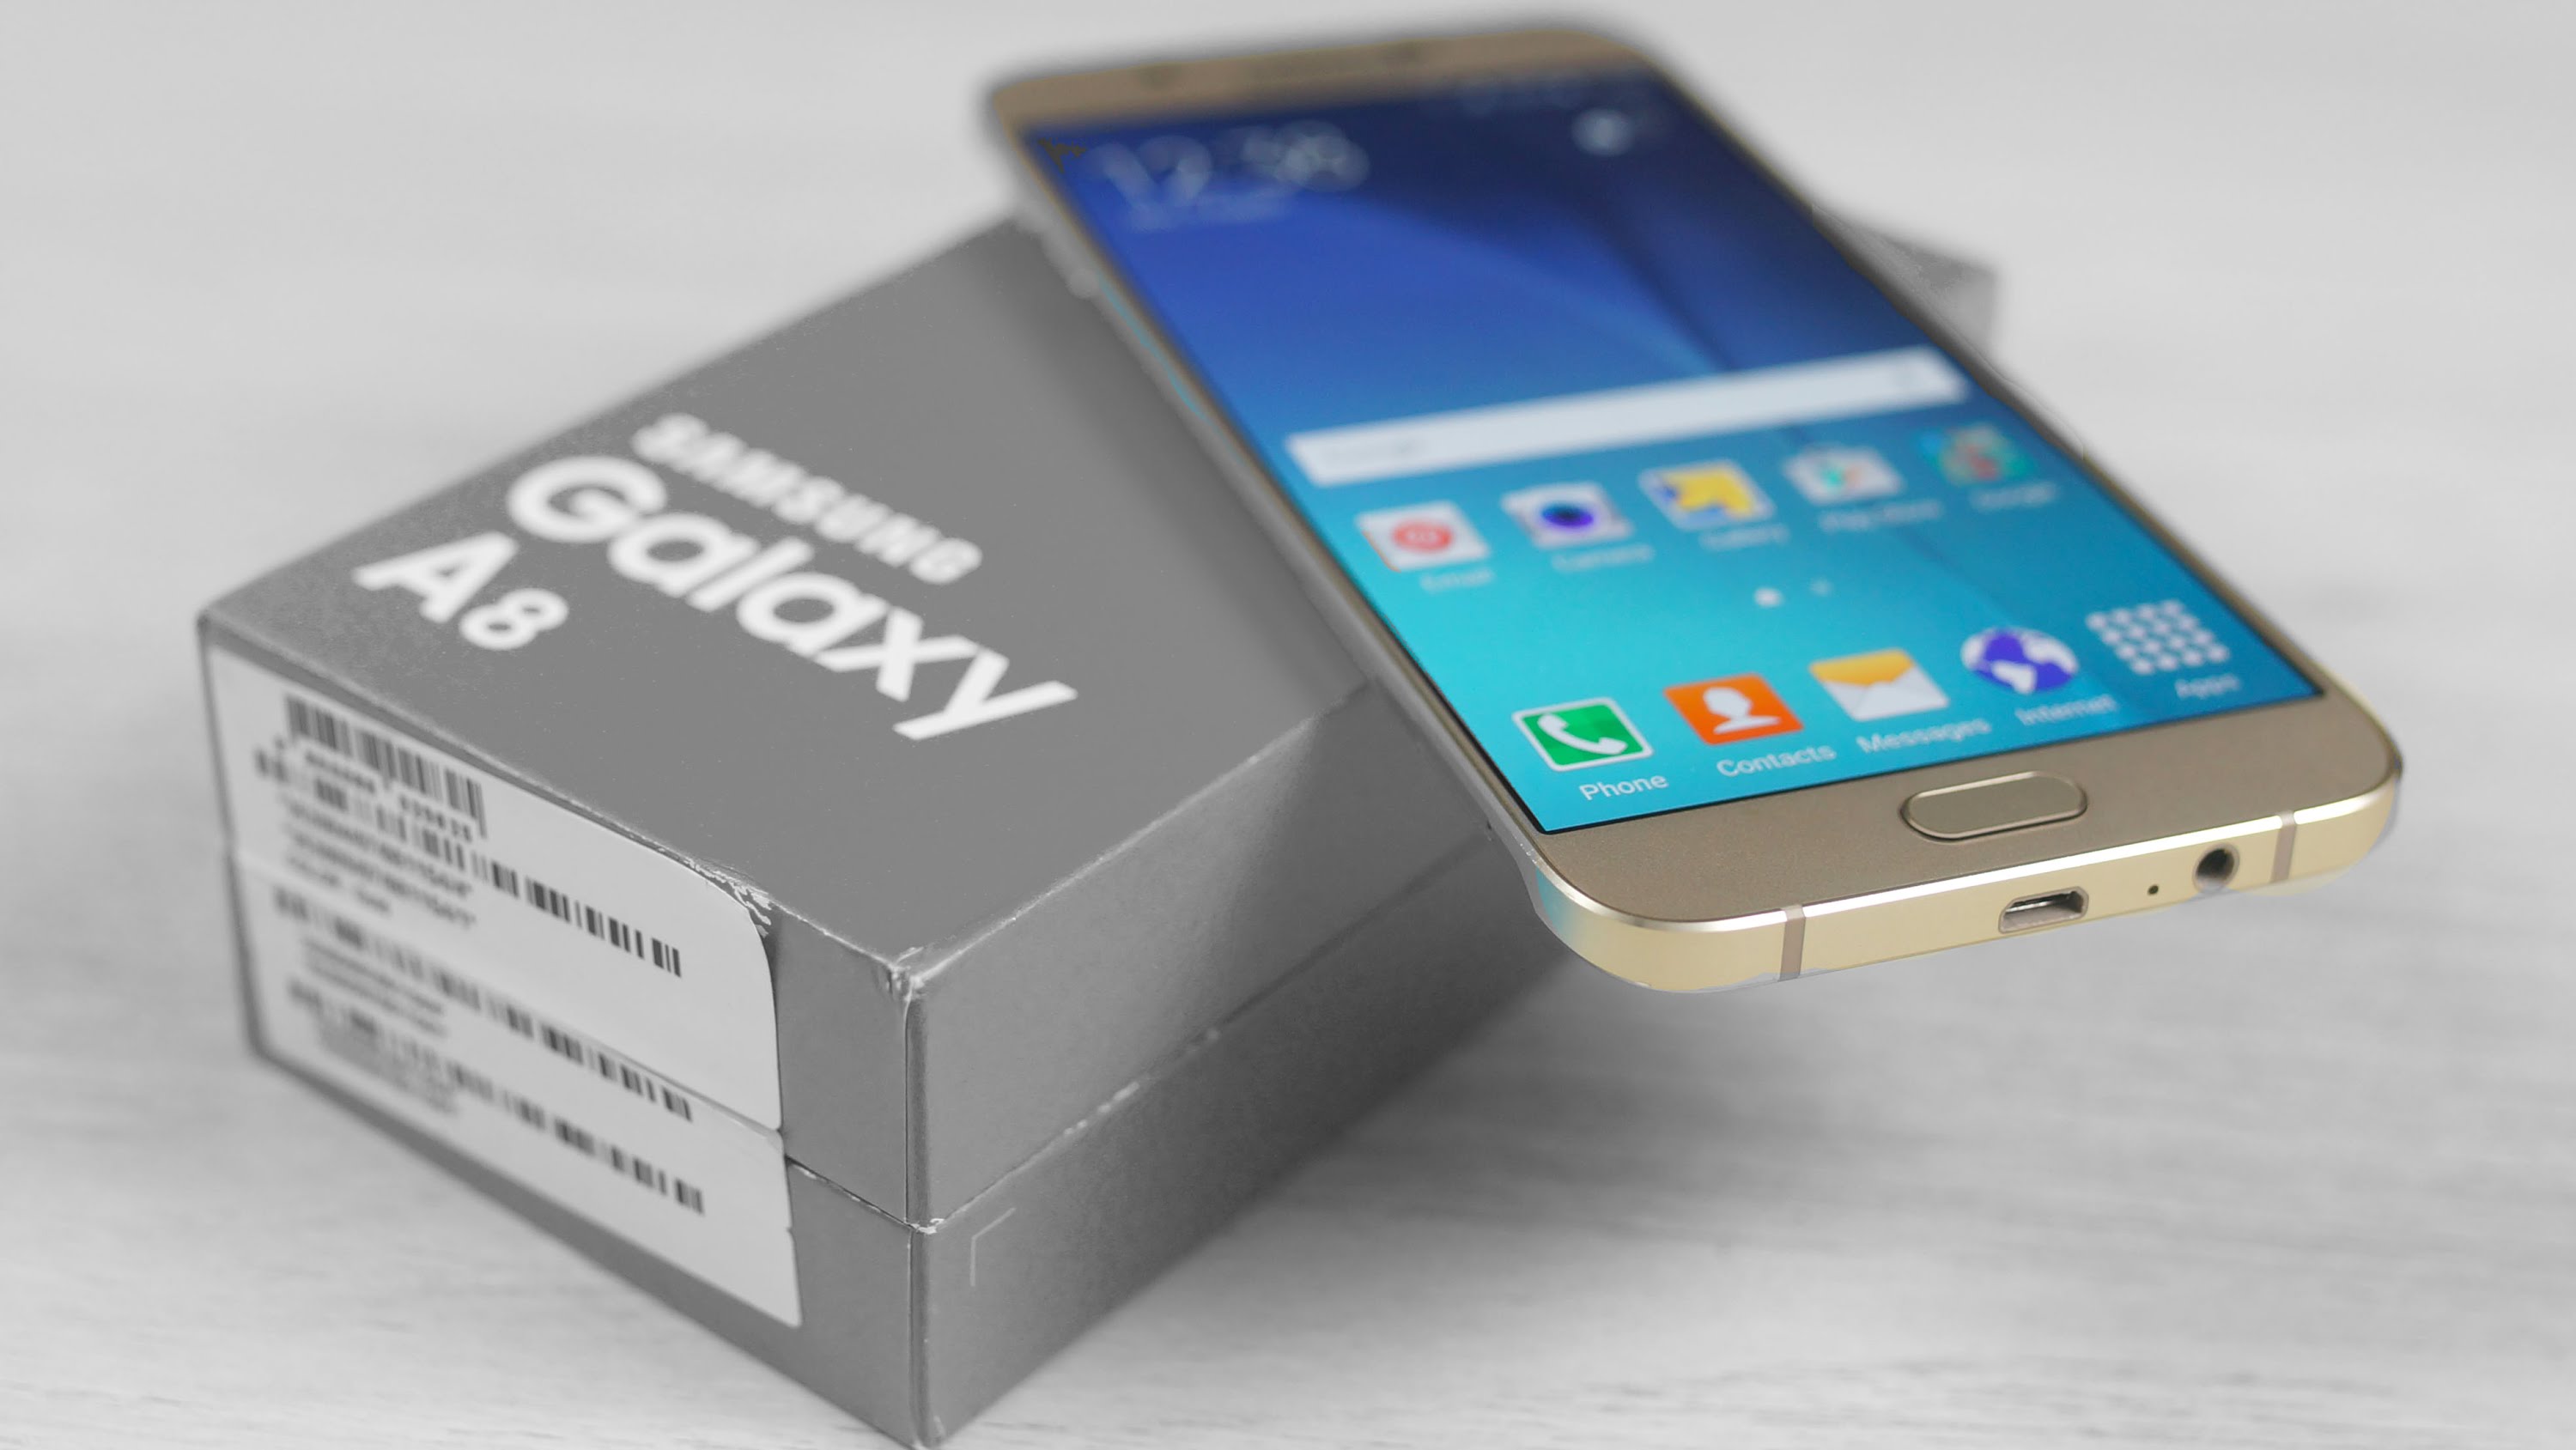 | Samsung Galaxy A8 (2016) | Samsung Galaxy A8 (2016) โผล่ใน GeekBench คอนเฟิร์มชิพ Exynos 7420 และ RAM 3GB